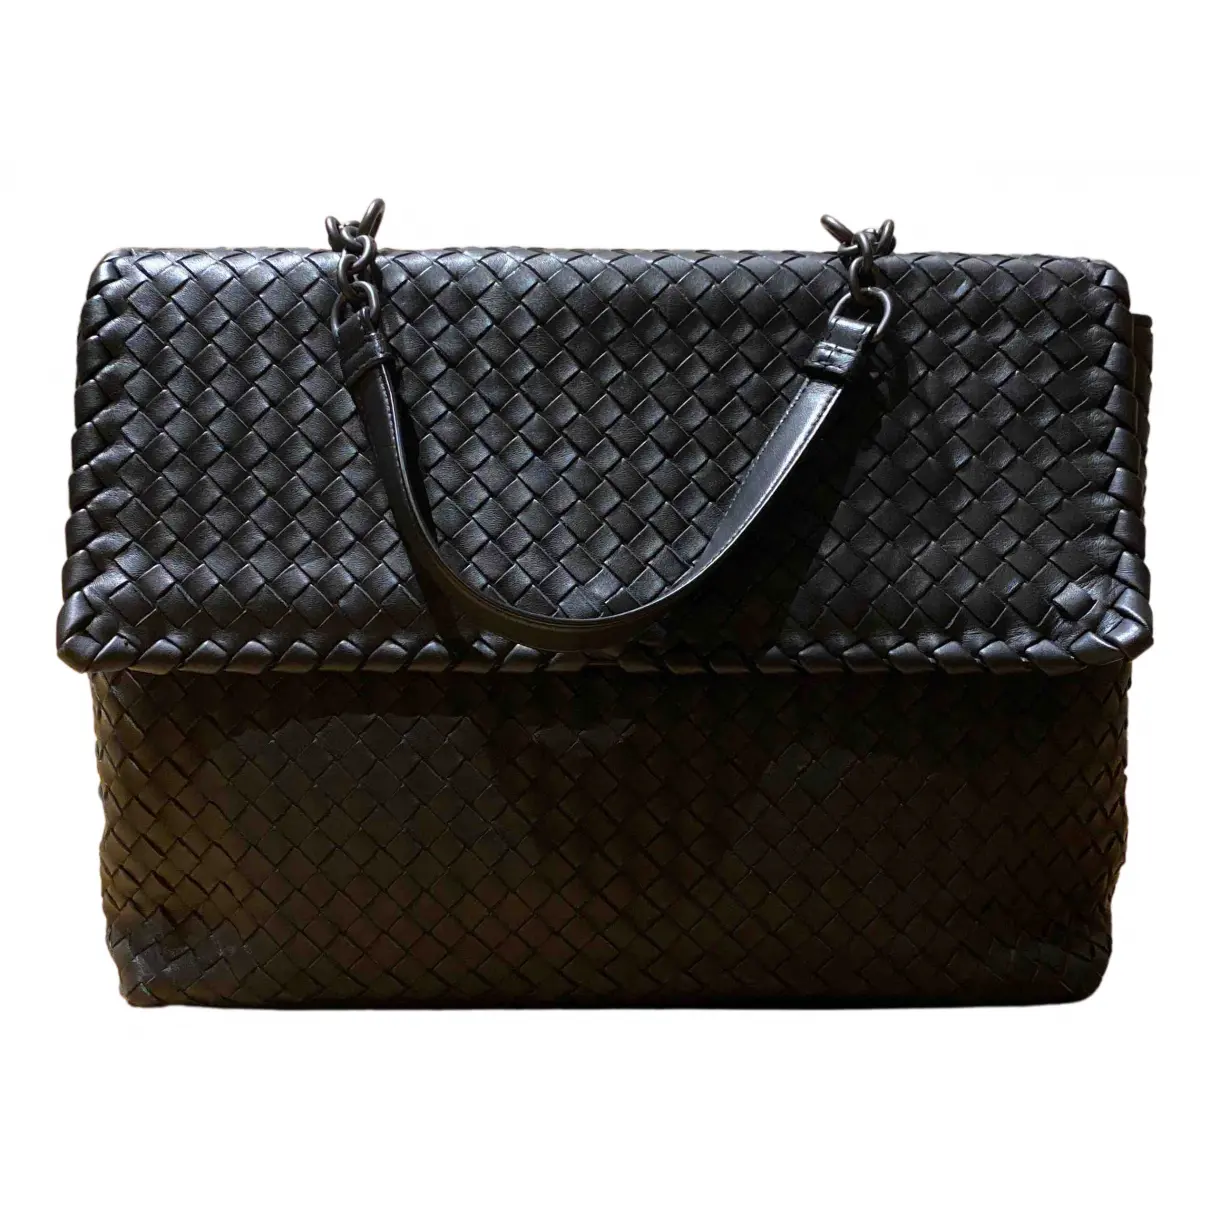 Olimpia leather handbag Bottega Veneta